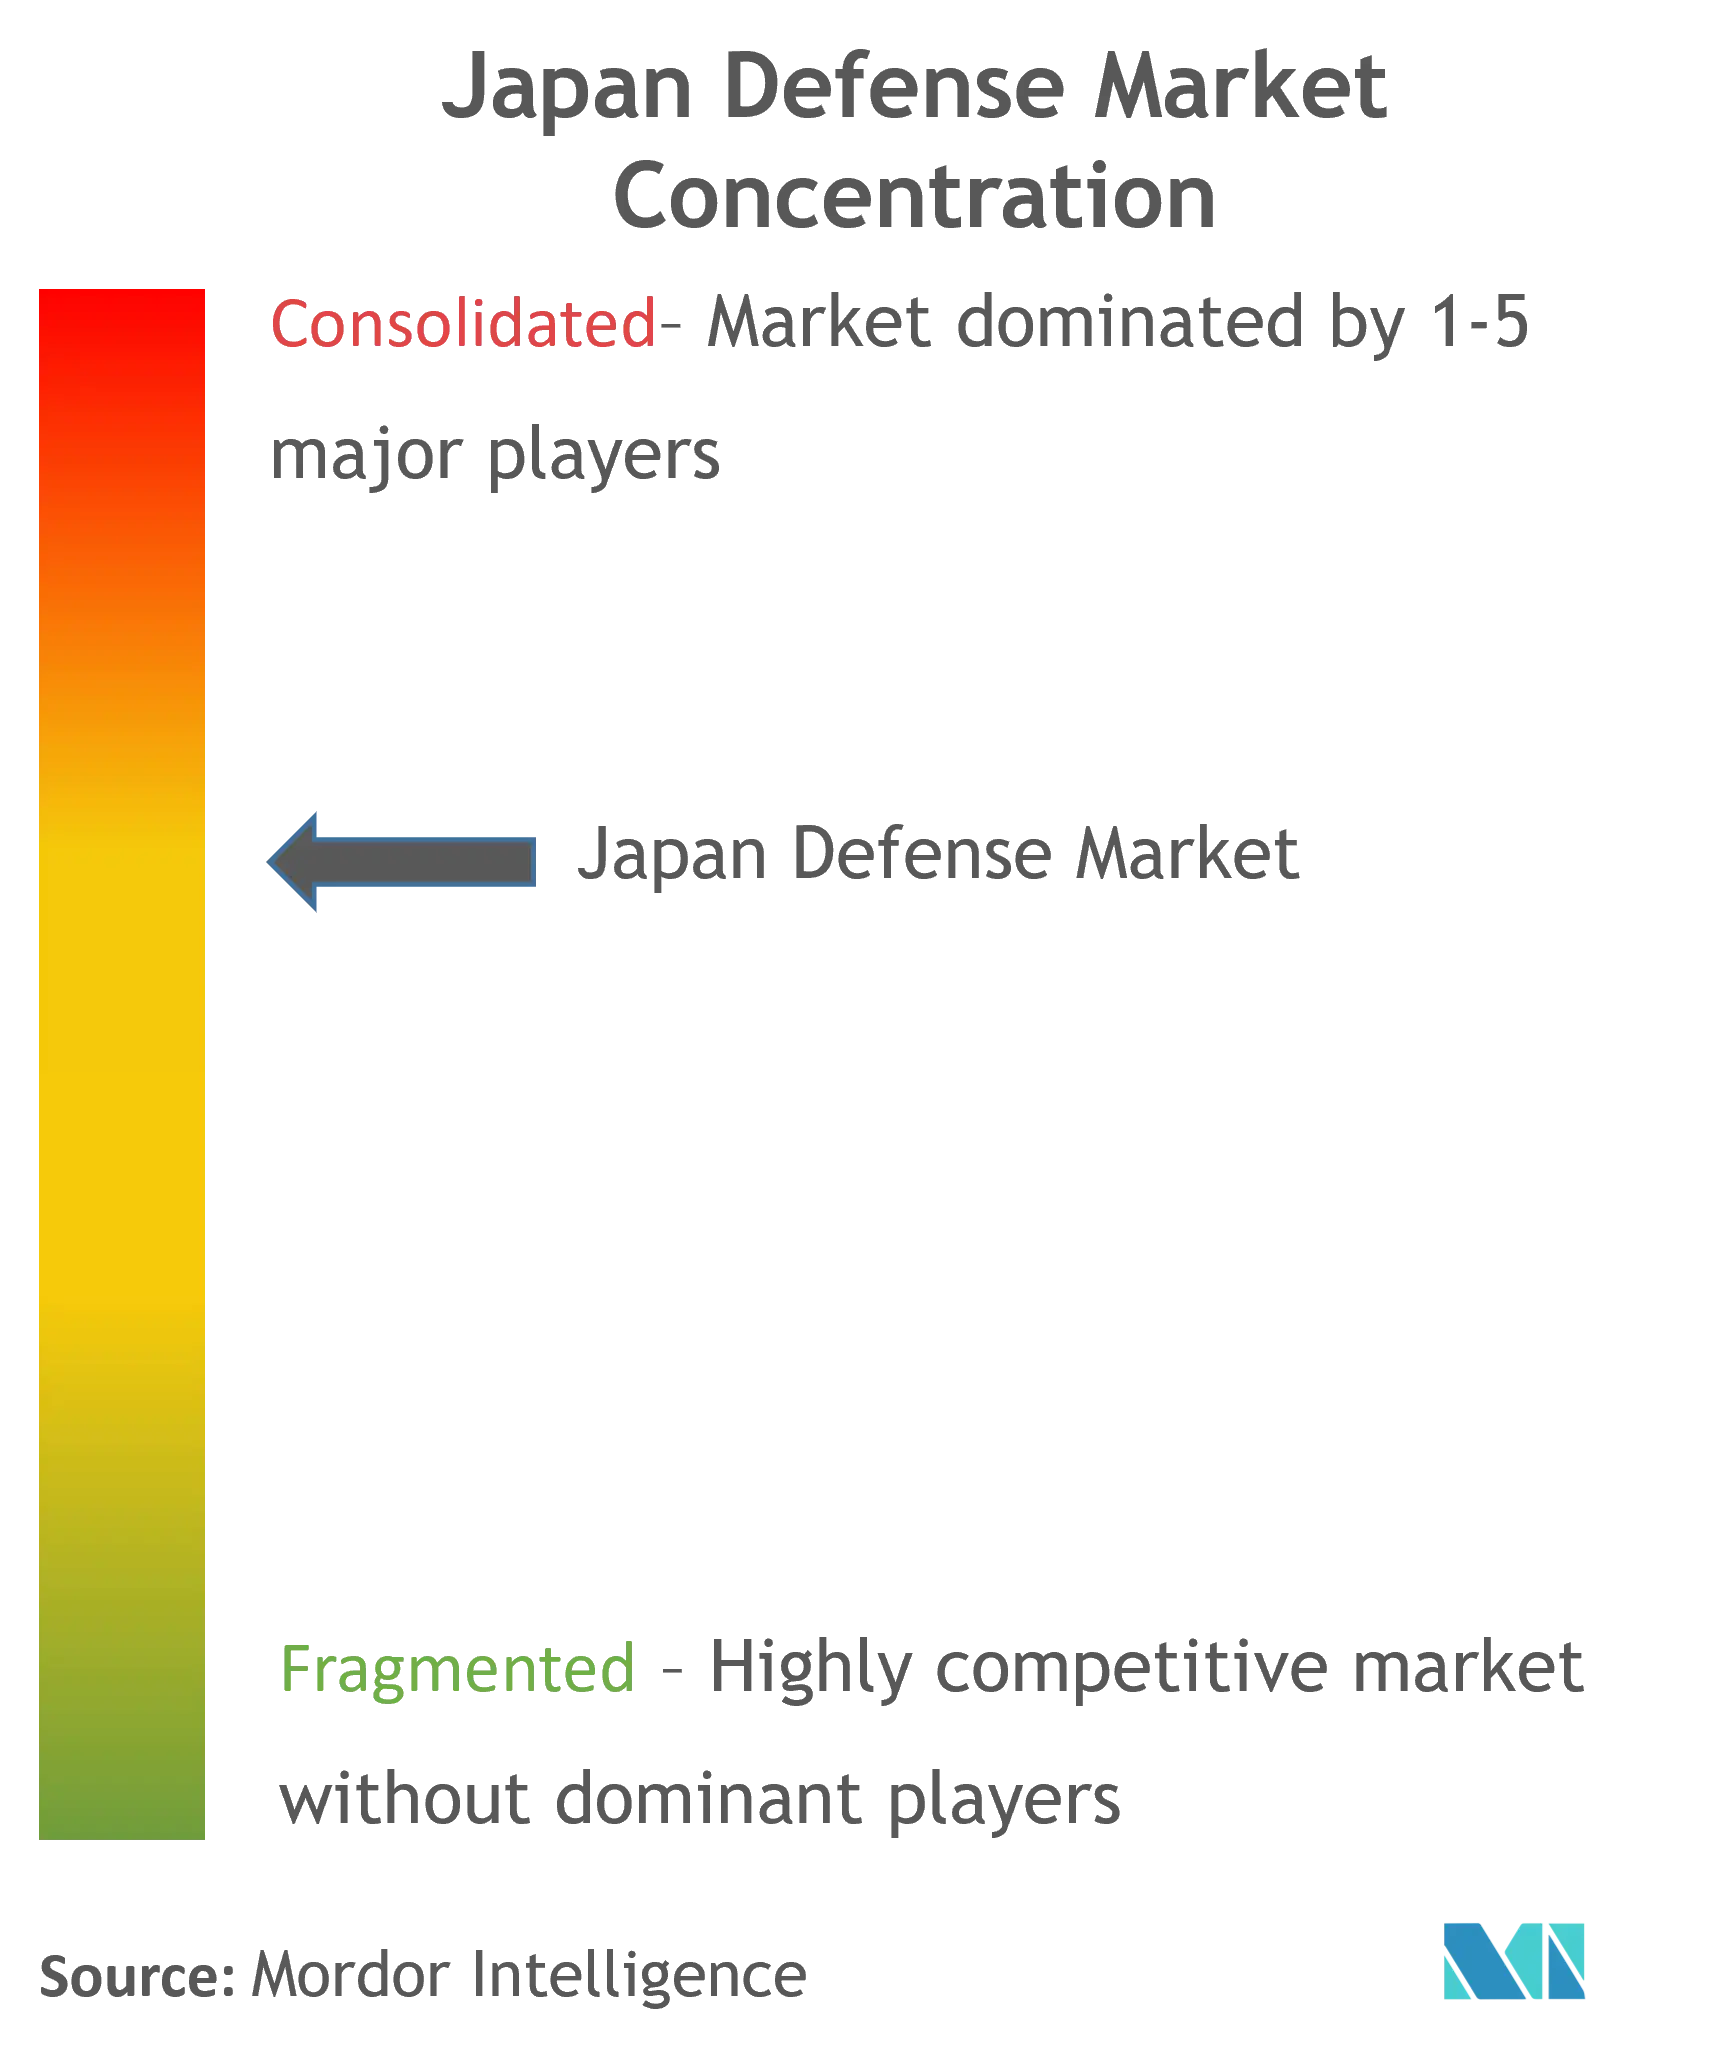 Japan Defense Market Concentration